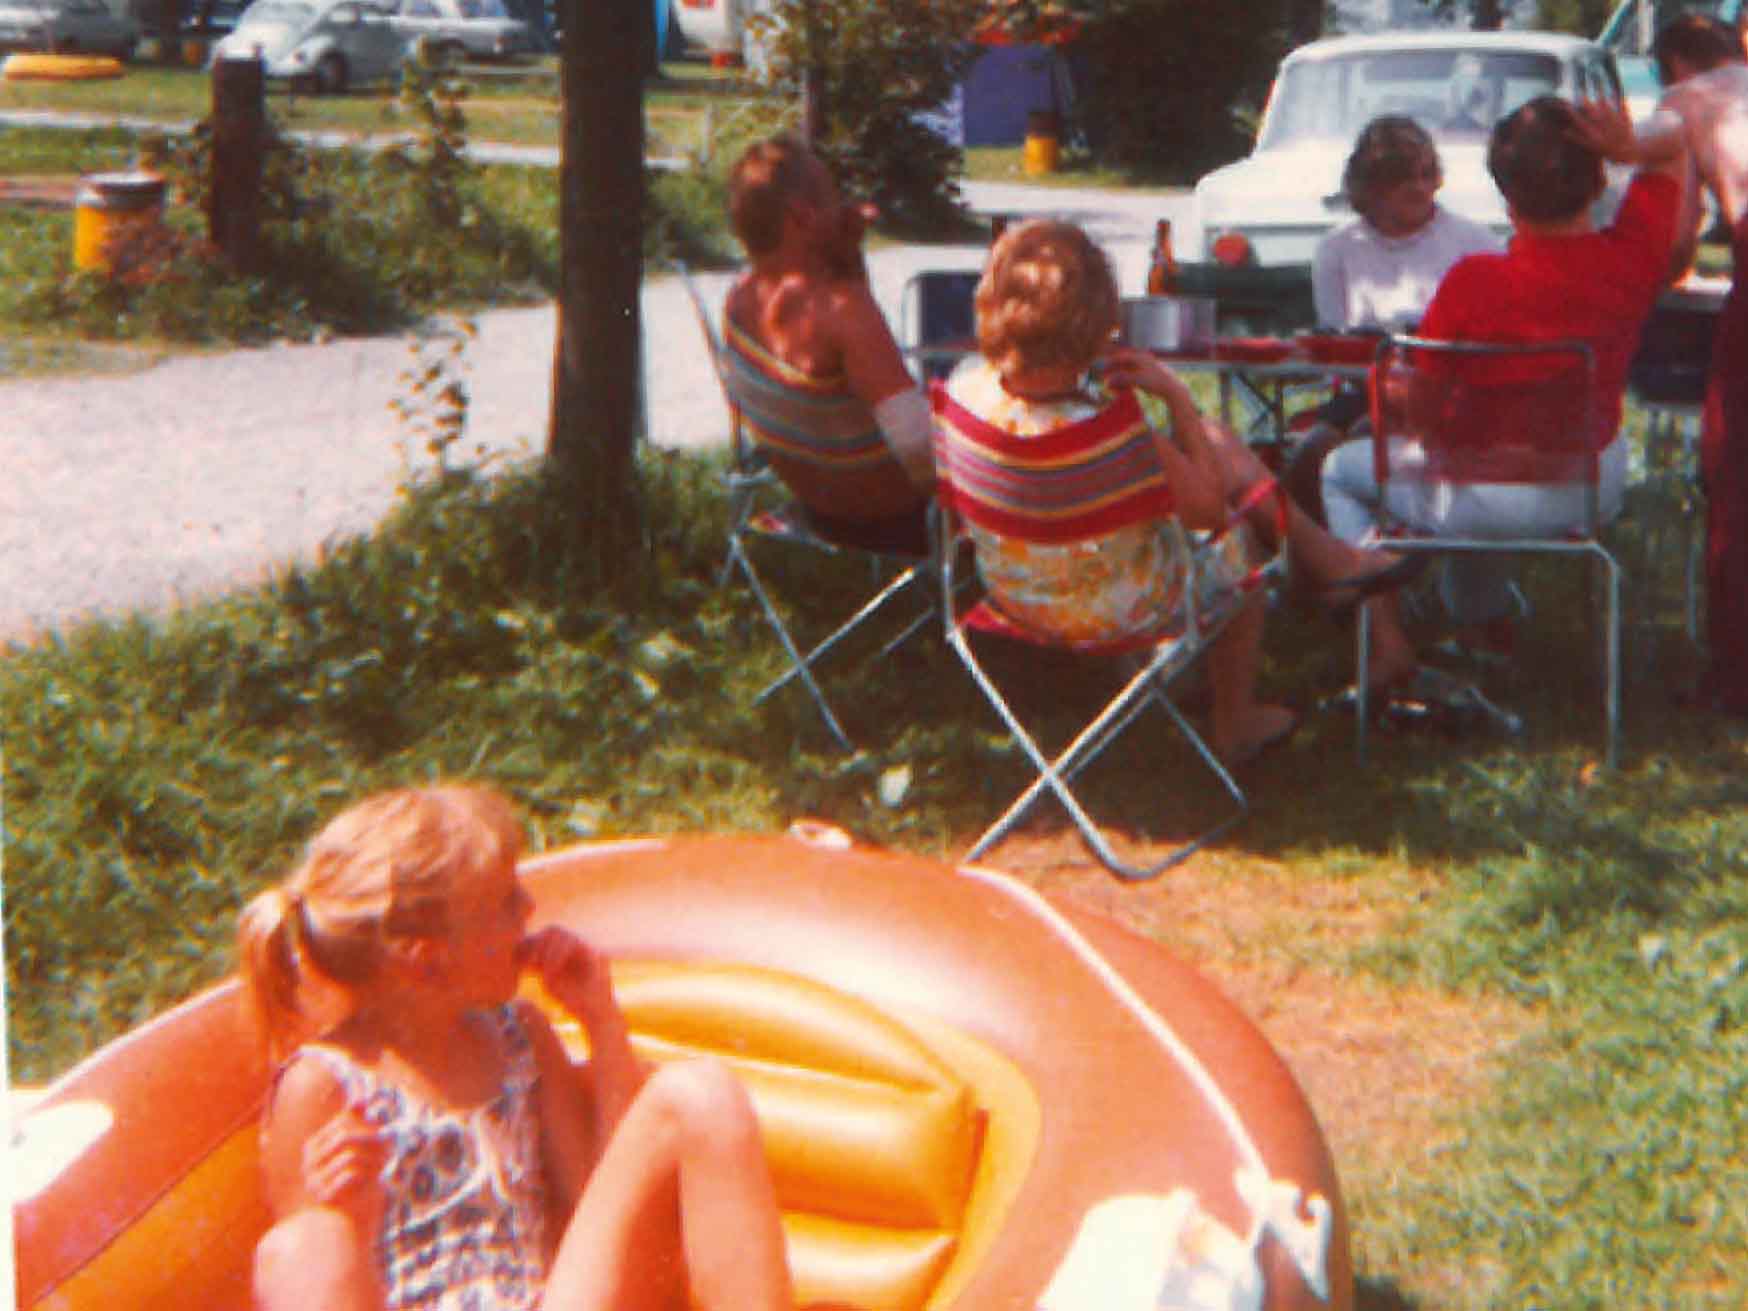 Ein Mädchen sitzt in einem Gummiboot und die Erwachsenen sitzen am Tisch